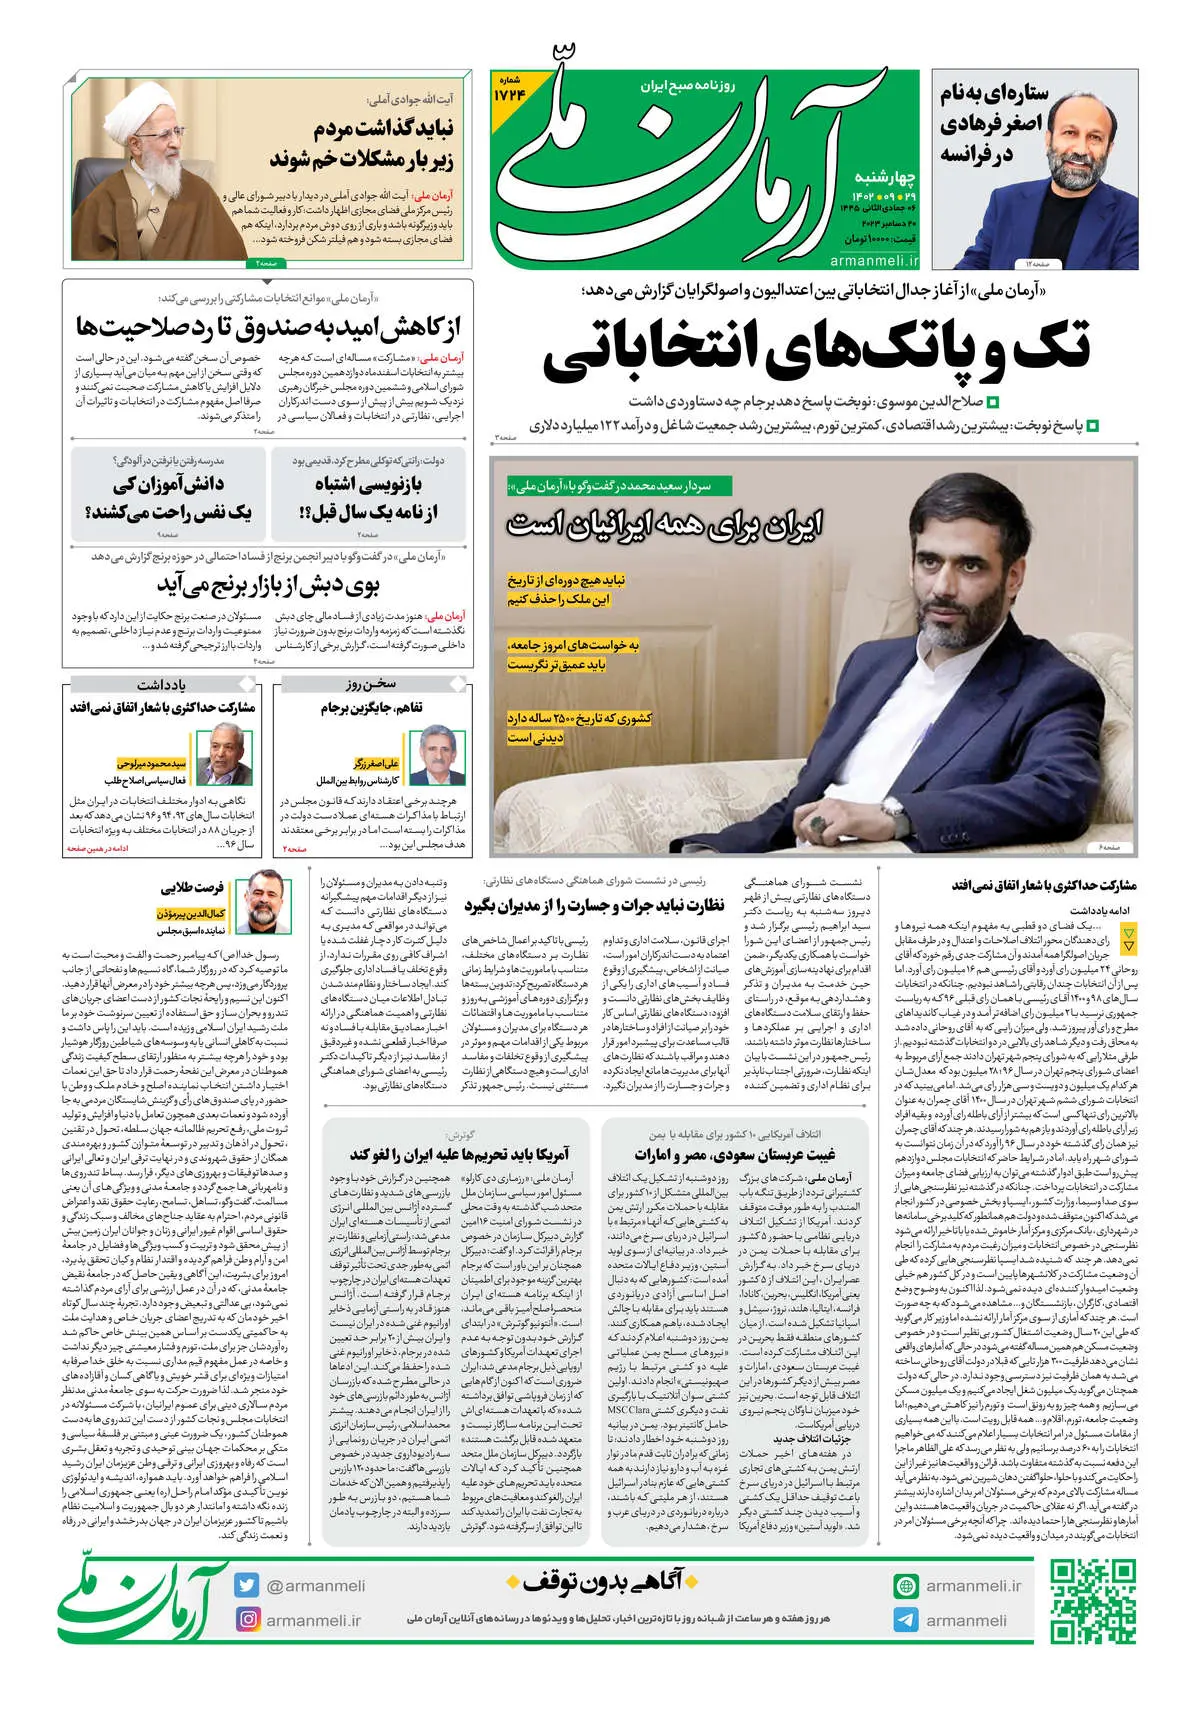 روزنامه آرمان ملی - چهارشنبه 29 آذر - شماره 1724